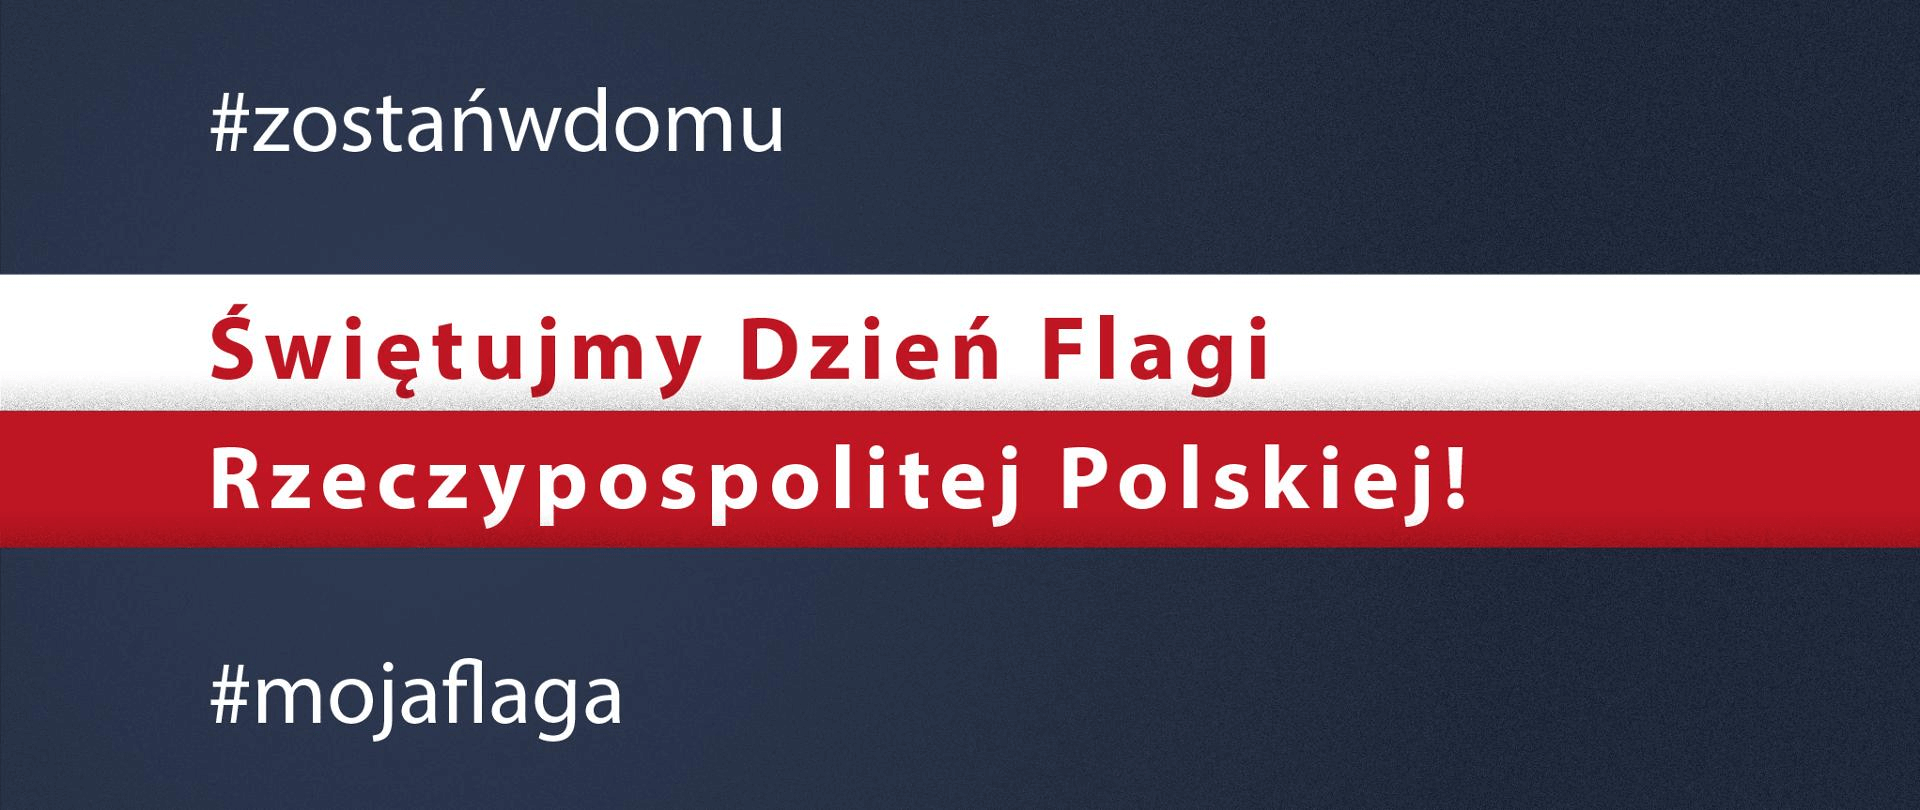 Granatowe tło z flagą Polski w poprzek. Na grafice tekst: #zostańwdomu Świętuj Dzień Flagi Rzeczypospolitej Polskiej! #mojaflaga"